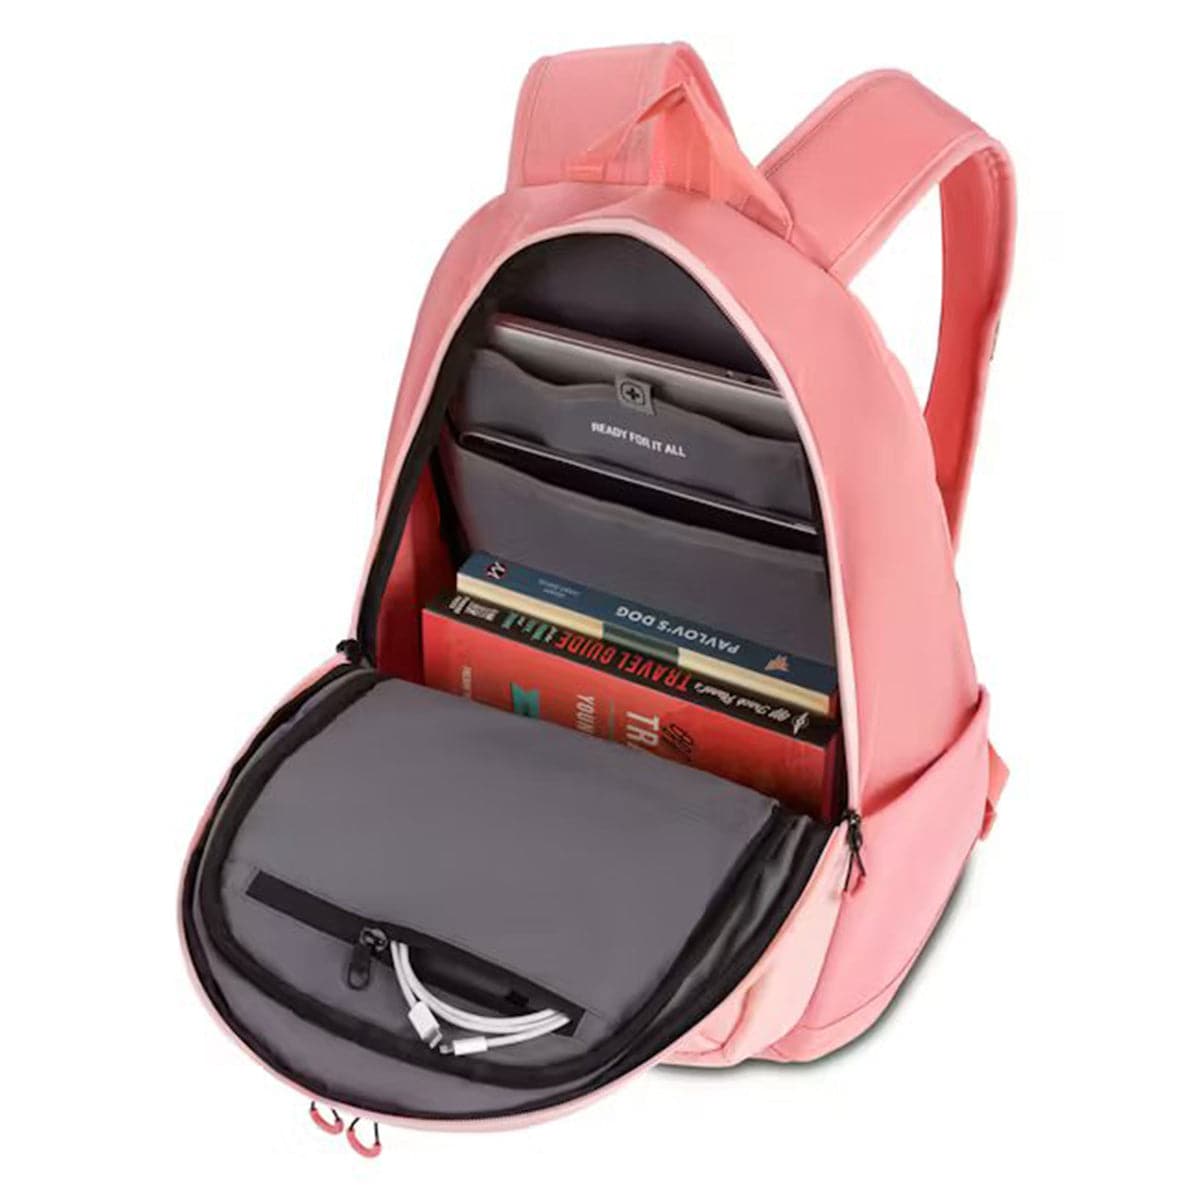 SwissGear 8171 16" Laptop Backpack